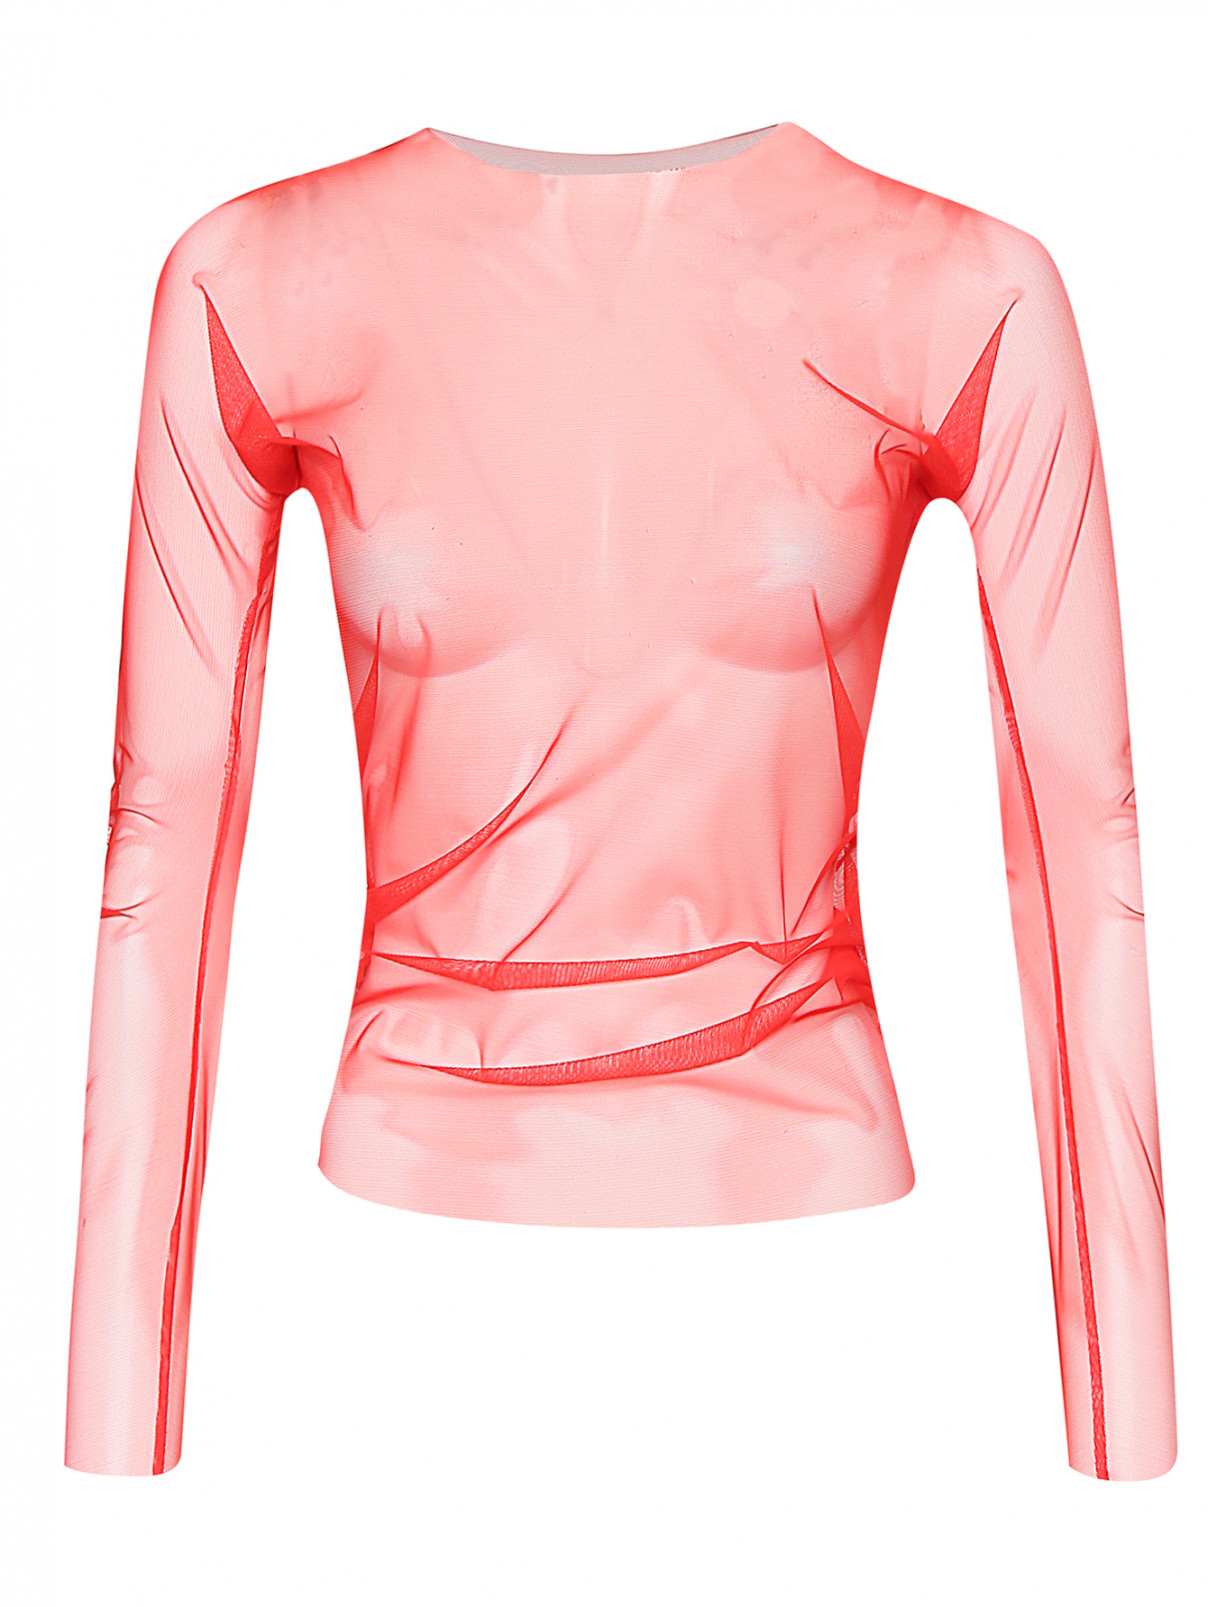 Прозрачная блуза из сетки Maison Margiela  –  Общий вид  – Цвет:  Красный